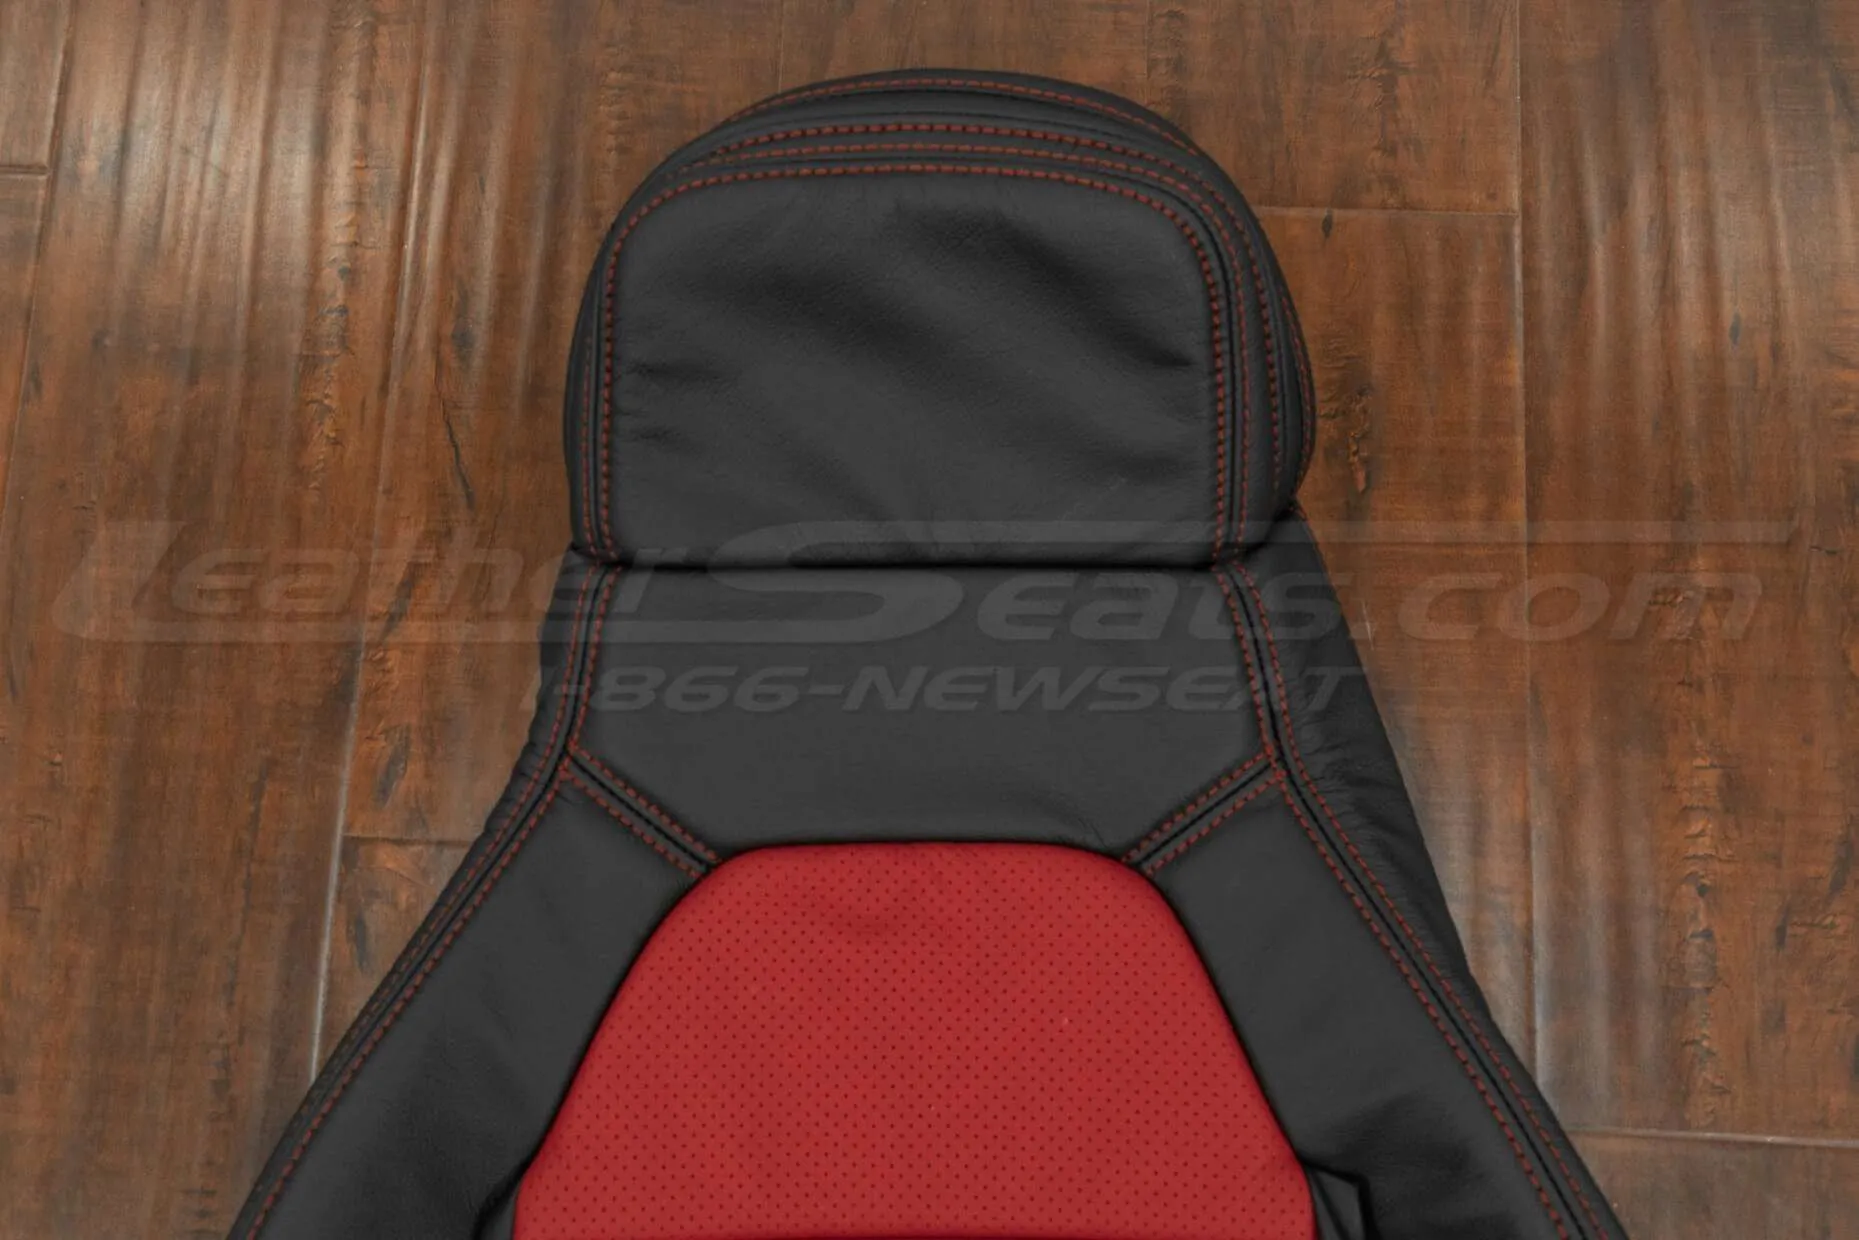 Upper section of backrest & headrest